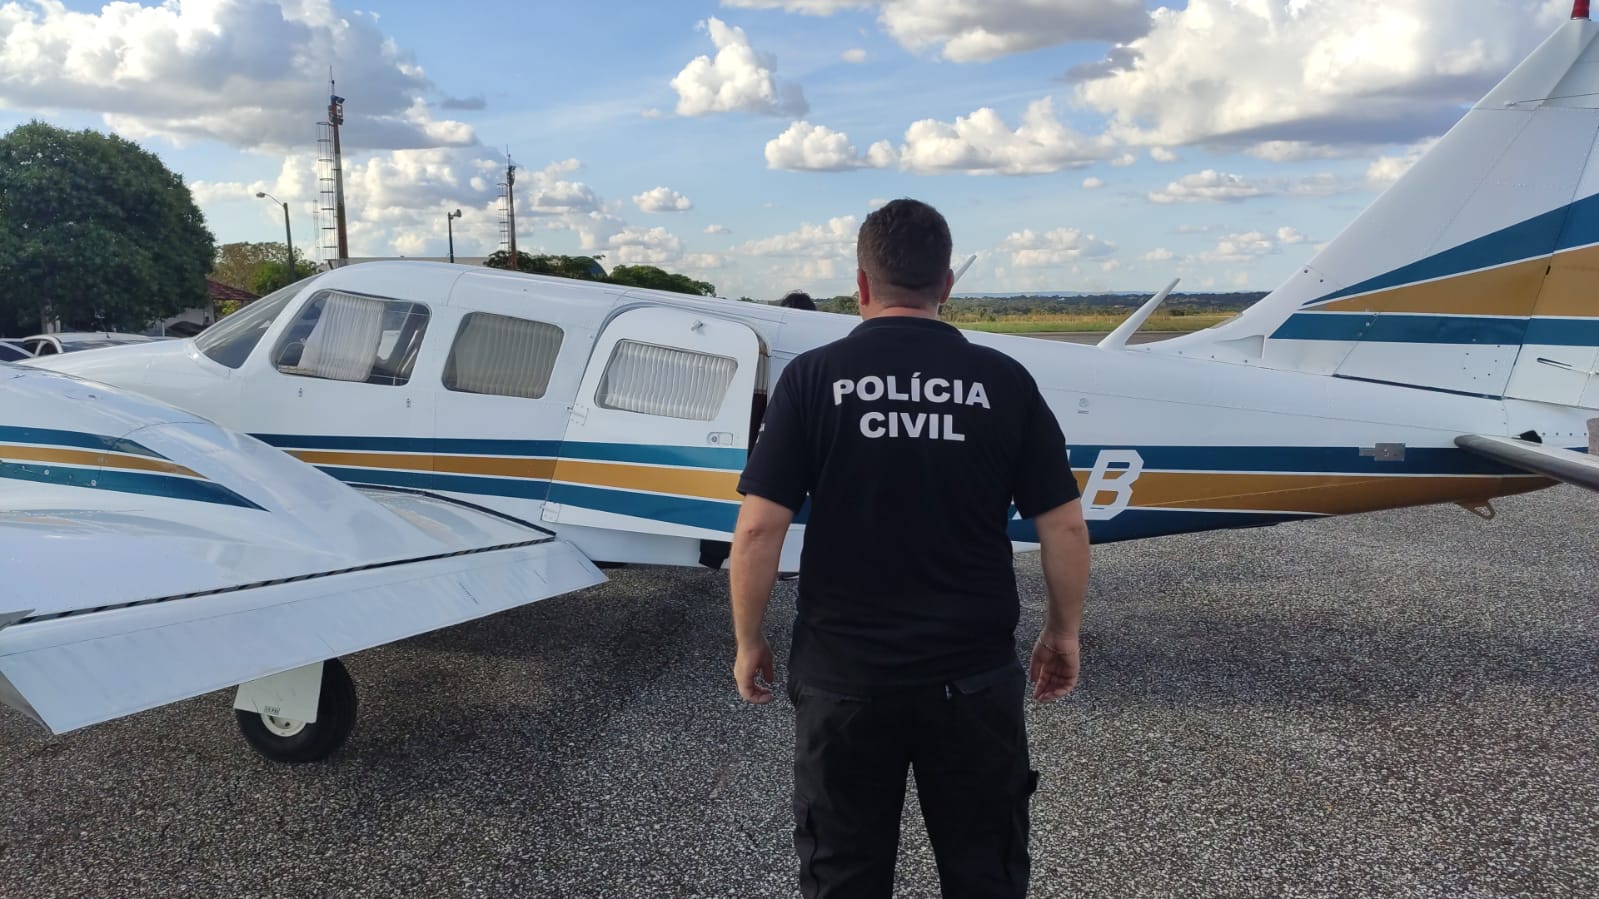  Polícia Civil do Estado do Tocantins obteve a cautela da aeronave que será utilizada no combate à criminalidade /Foto: Divulgação PC-TO